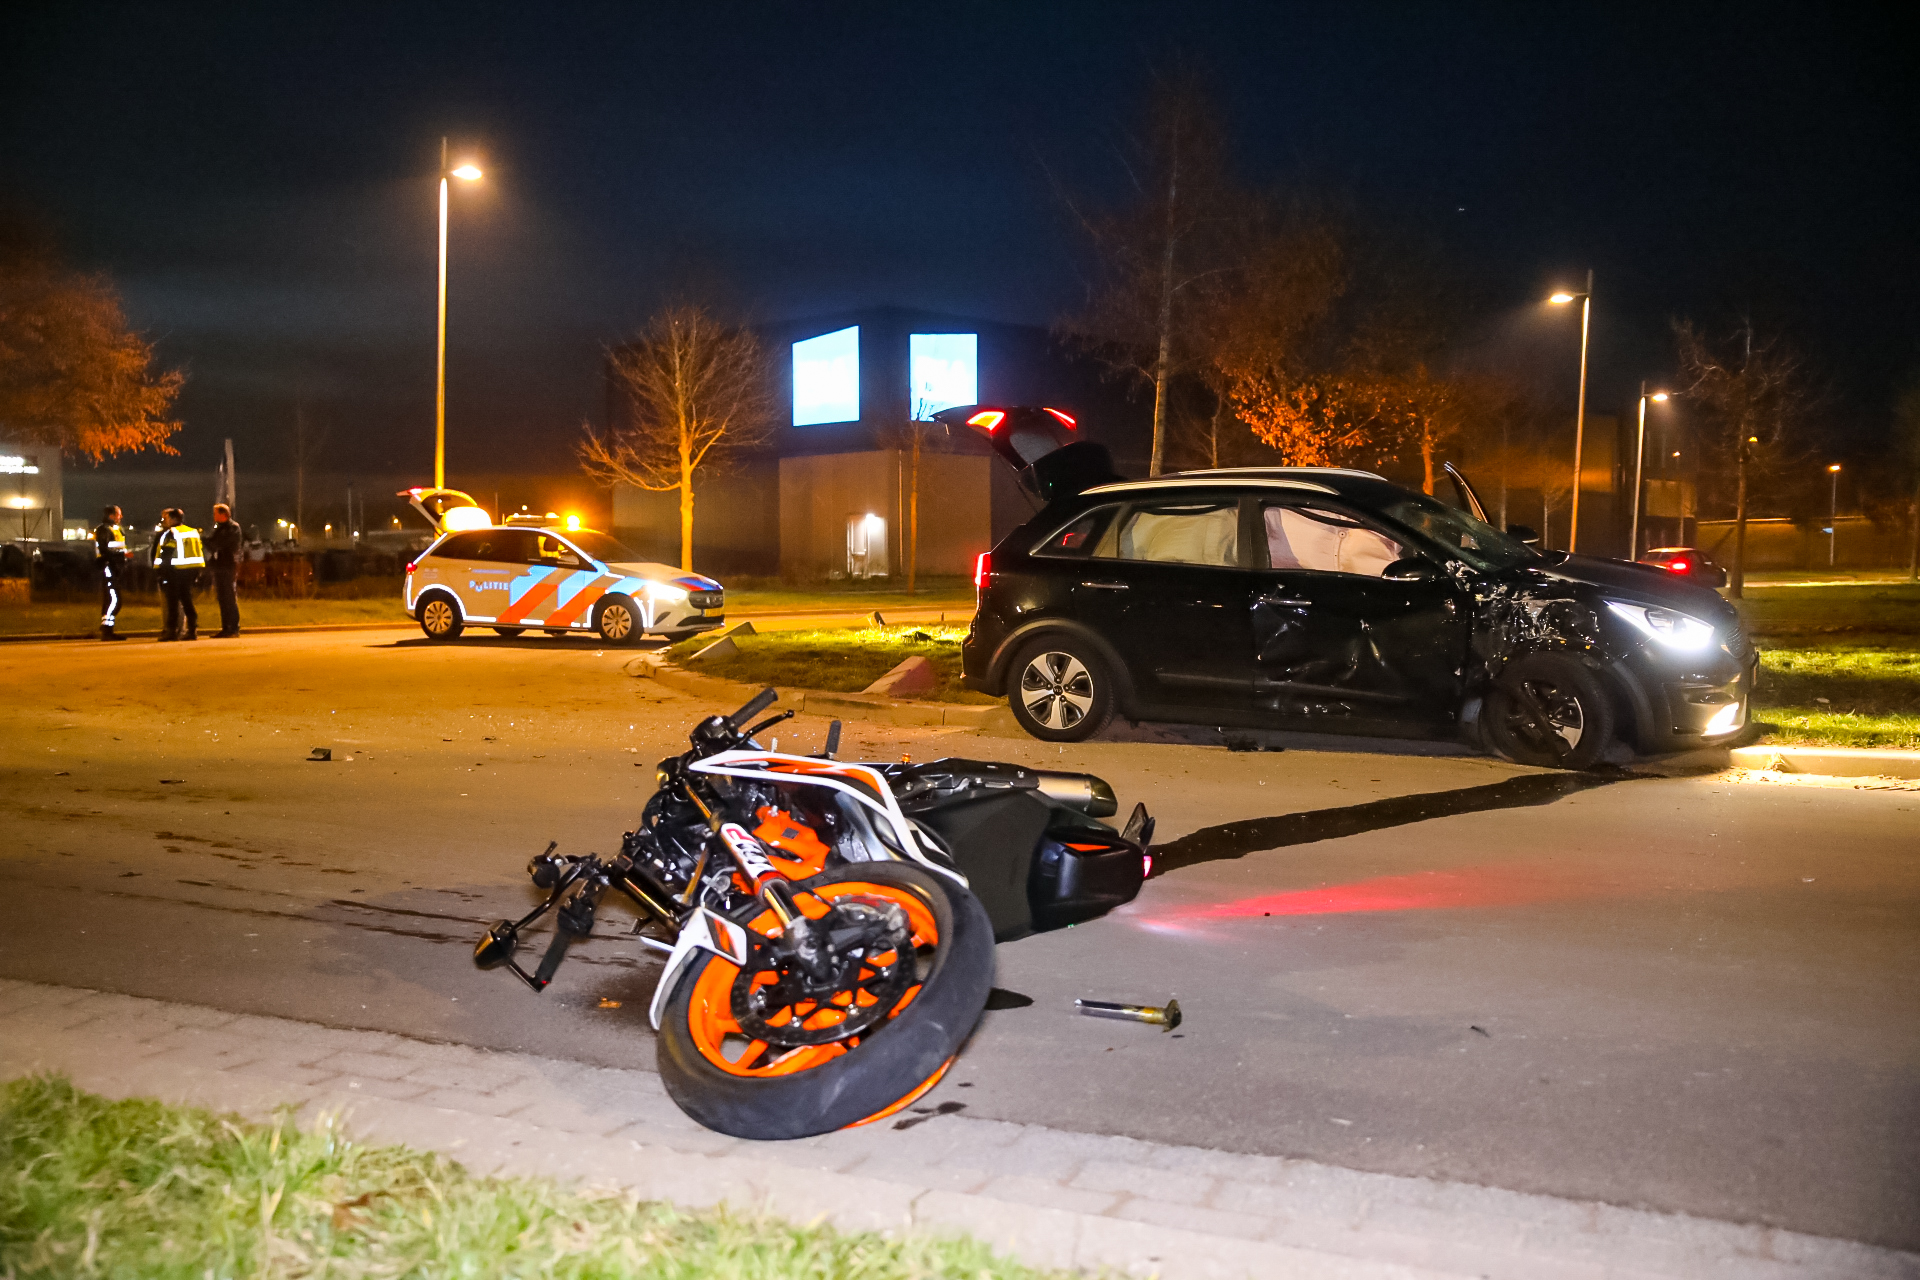 VIDEO Ernstig ongeluk in Apeldoorn, motorrijder zwaargewond.